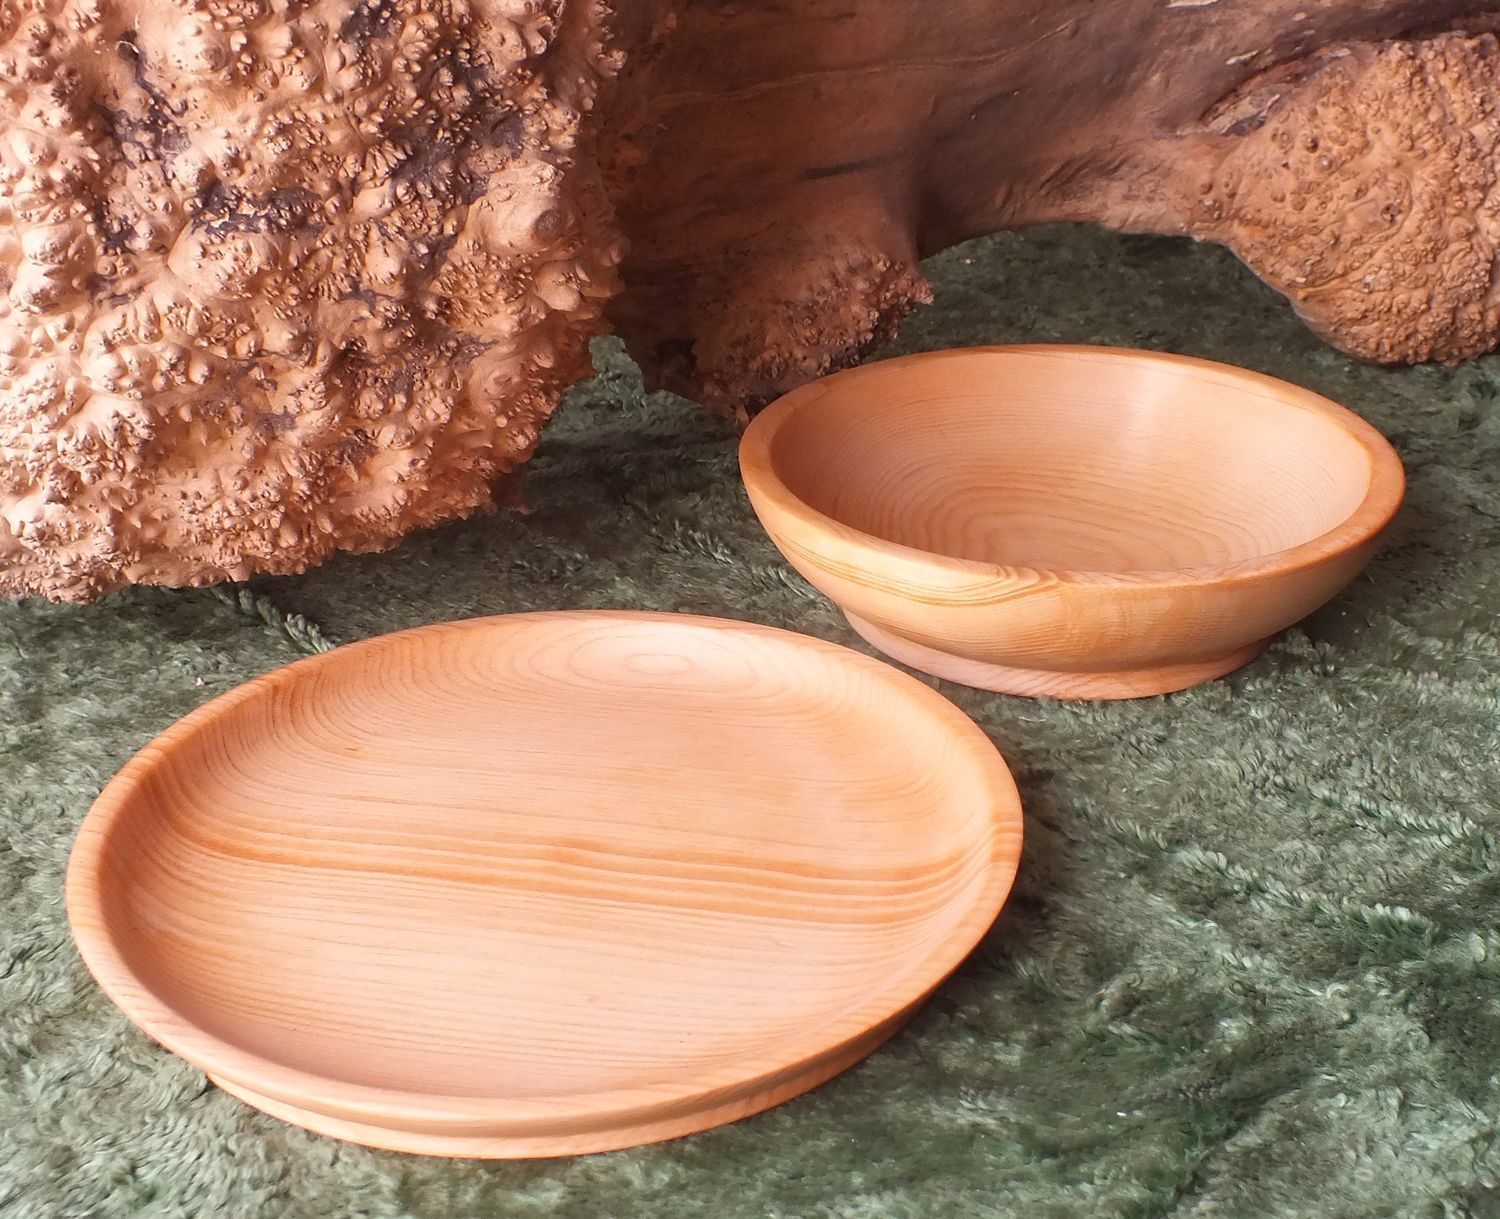 Купить тарелку для еды. Деревянная посуда. Посуда из древесины. Деревянная тарелка. Современная деревянная посуда.